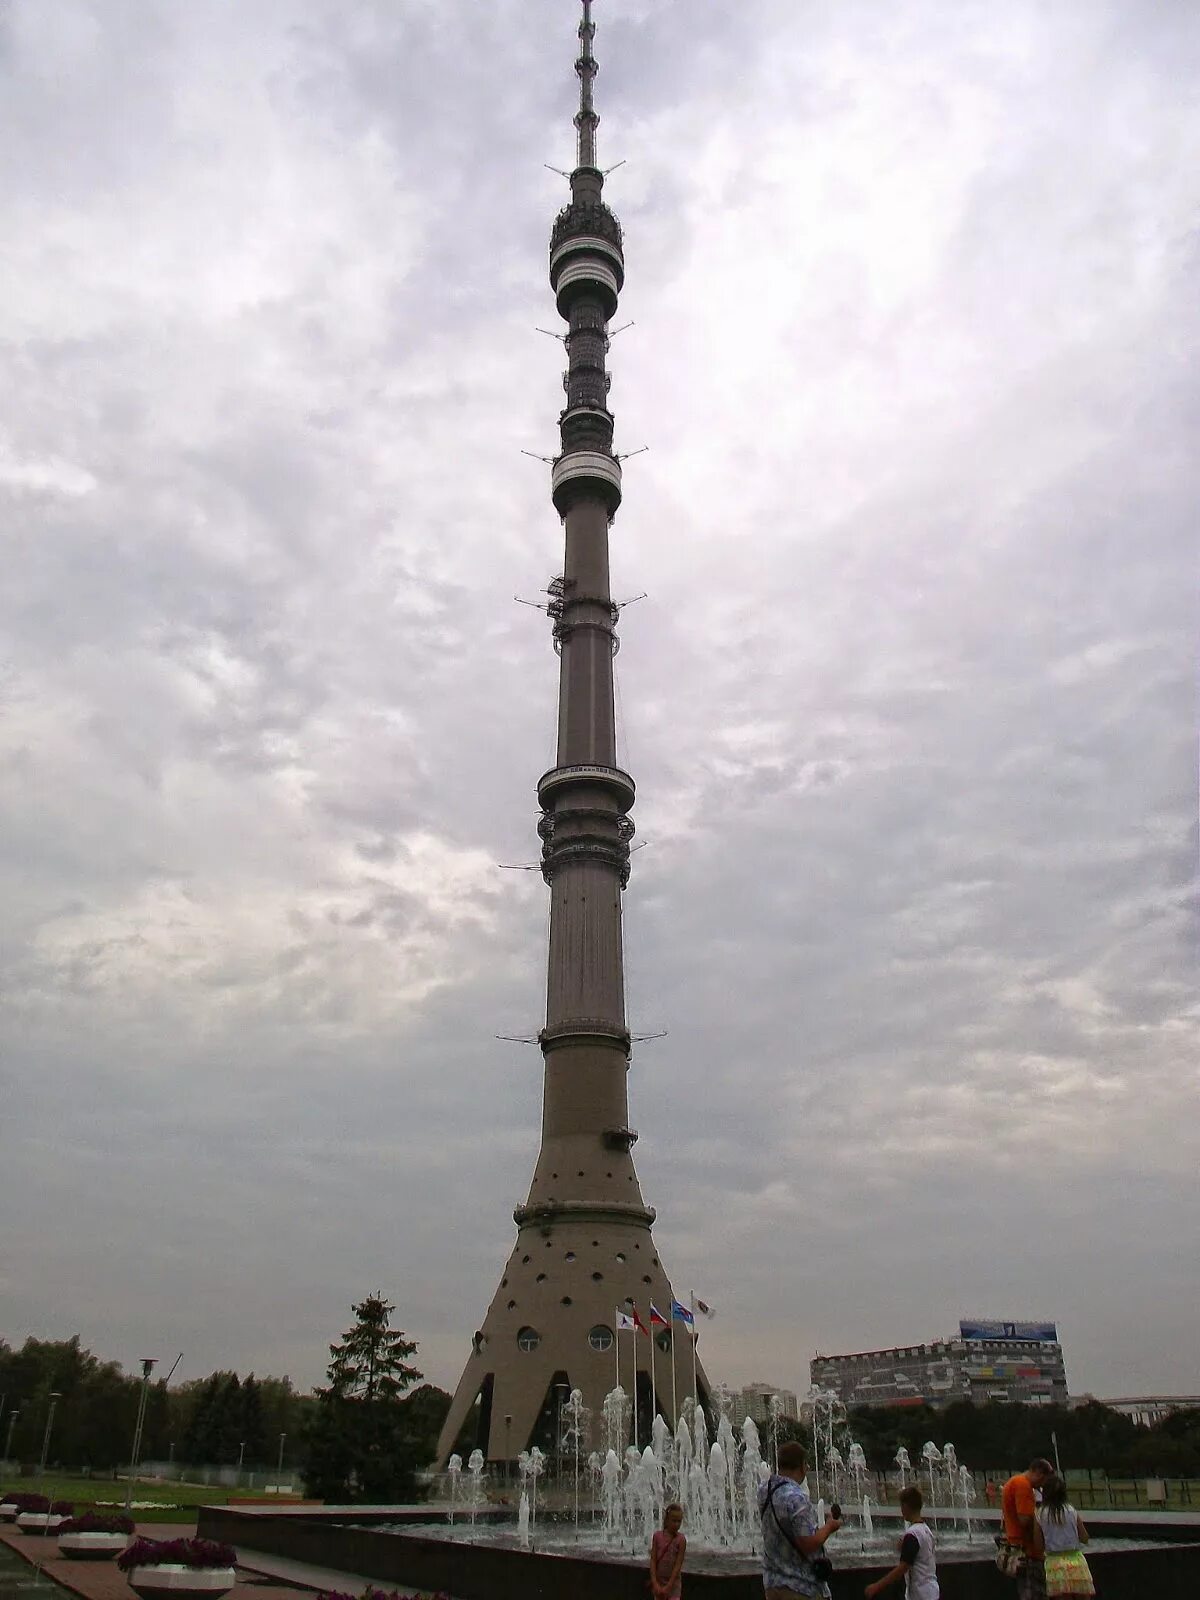 Сколько высота останкинской. Высота Останкинской башни. Останкинская телебашня высота 337 метров. Останкино экскурсии на башню. Останкинская башня метры.